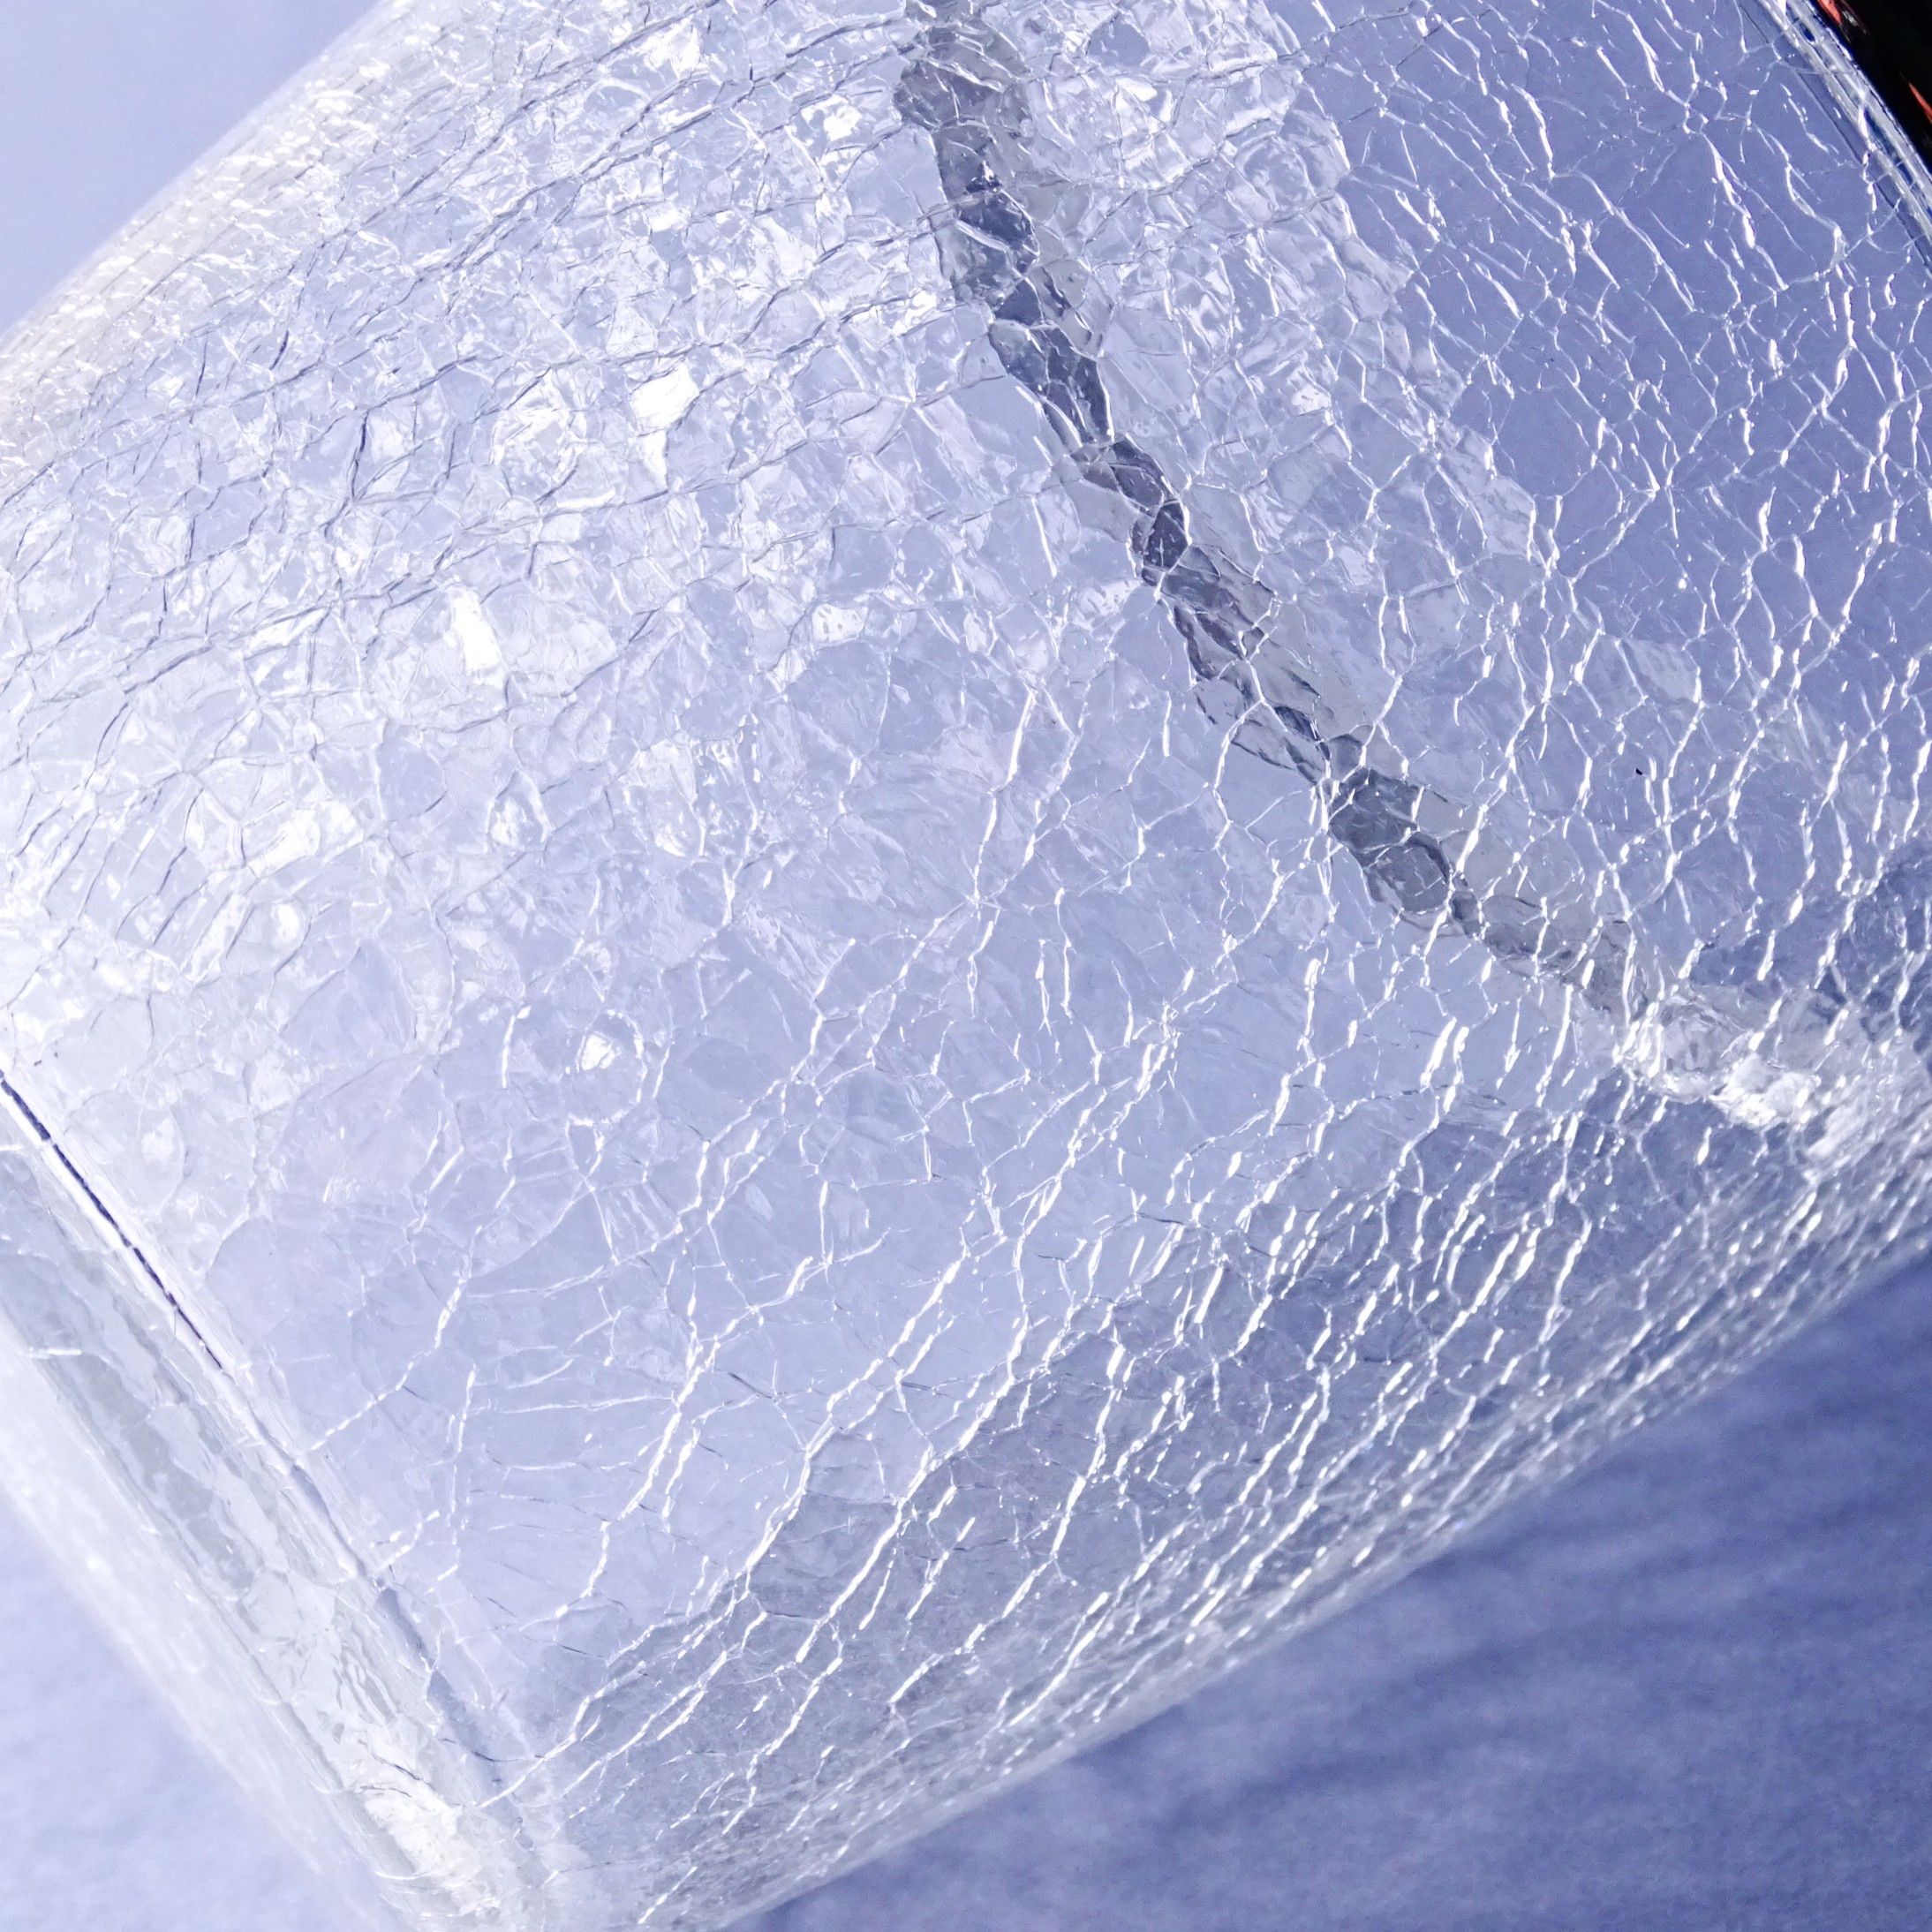 krakelura szkło lodowe lata 60-te piękne wiaderko na lód